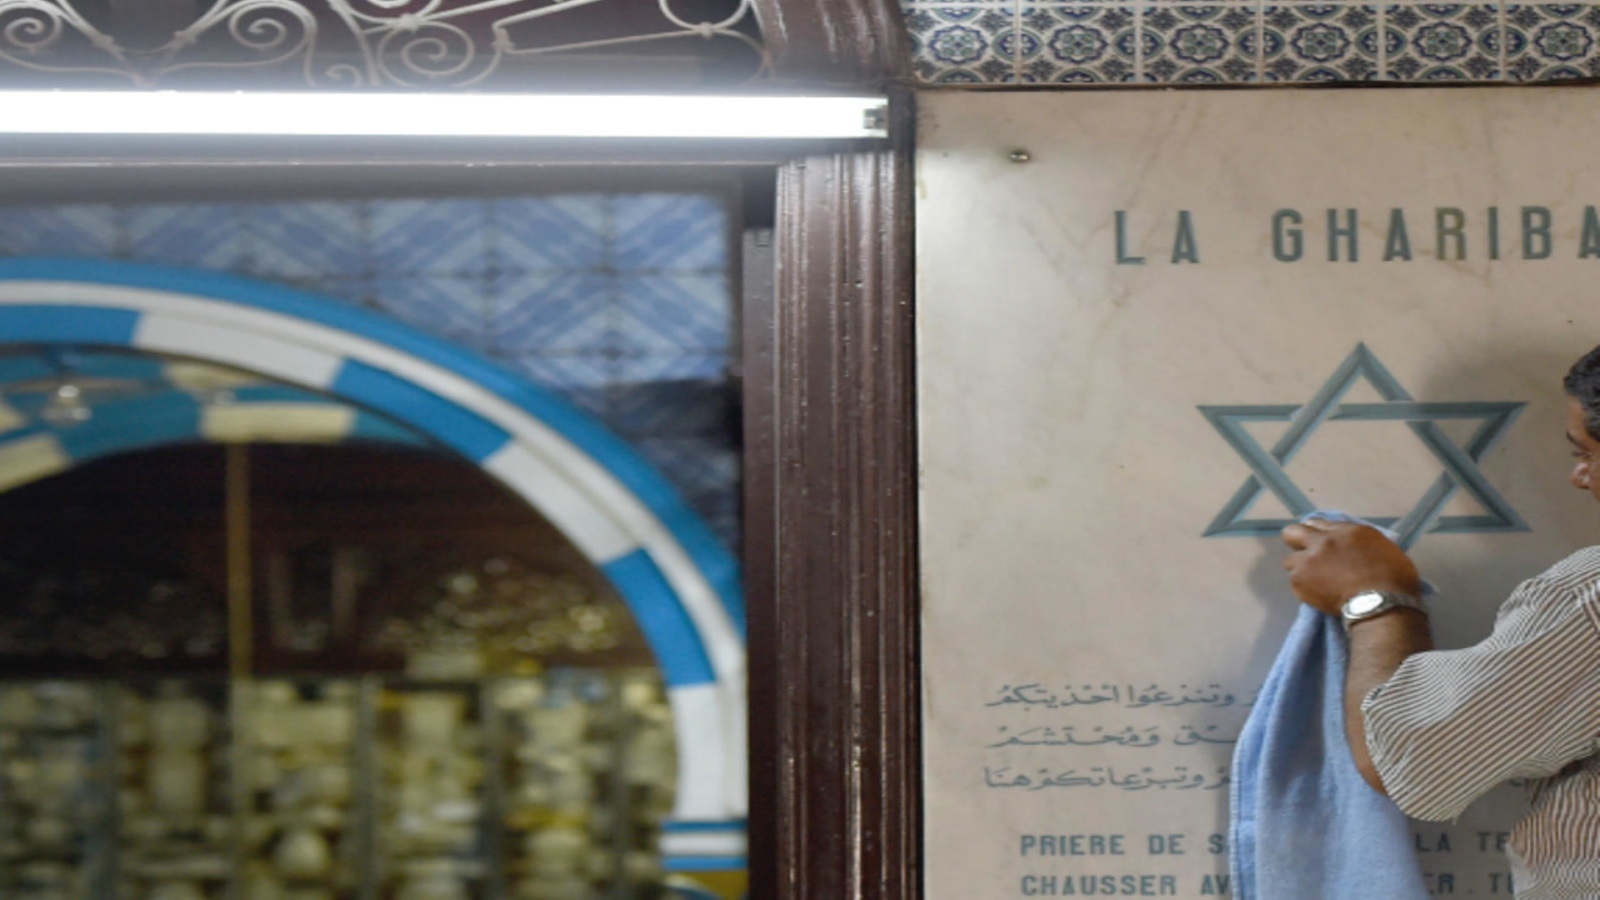 تحديد موعد الحجّ اليهودي إلى كنيس الغريبة في تونس 